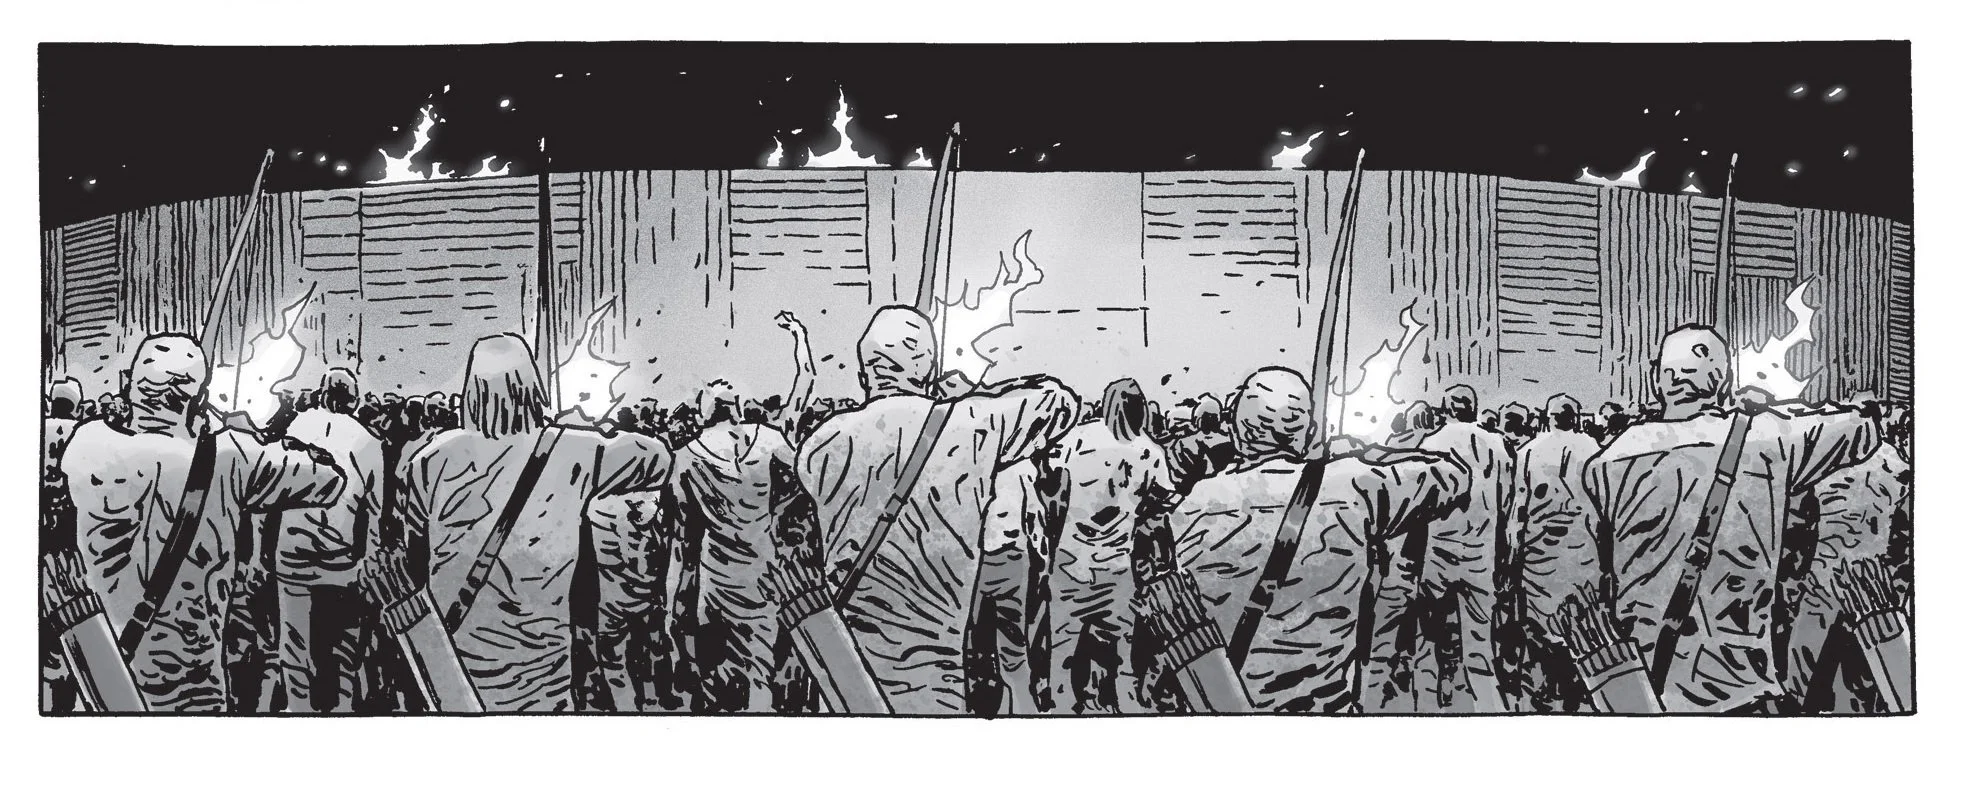 Война с Шепчущимися в комиксе The Walking Dead не оправдала ожиданий - фото 19